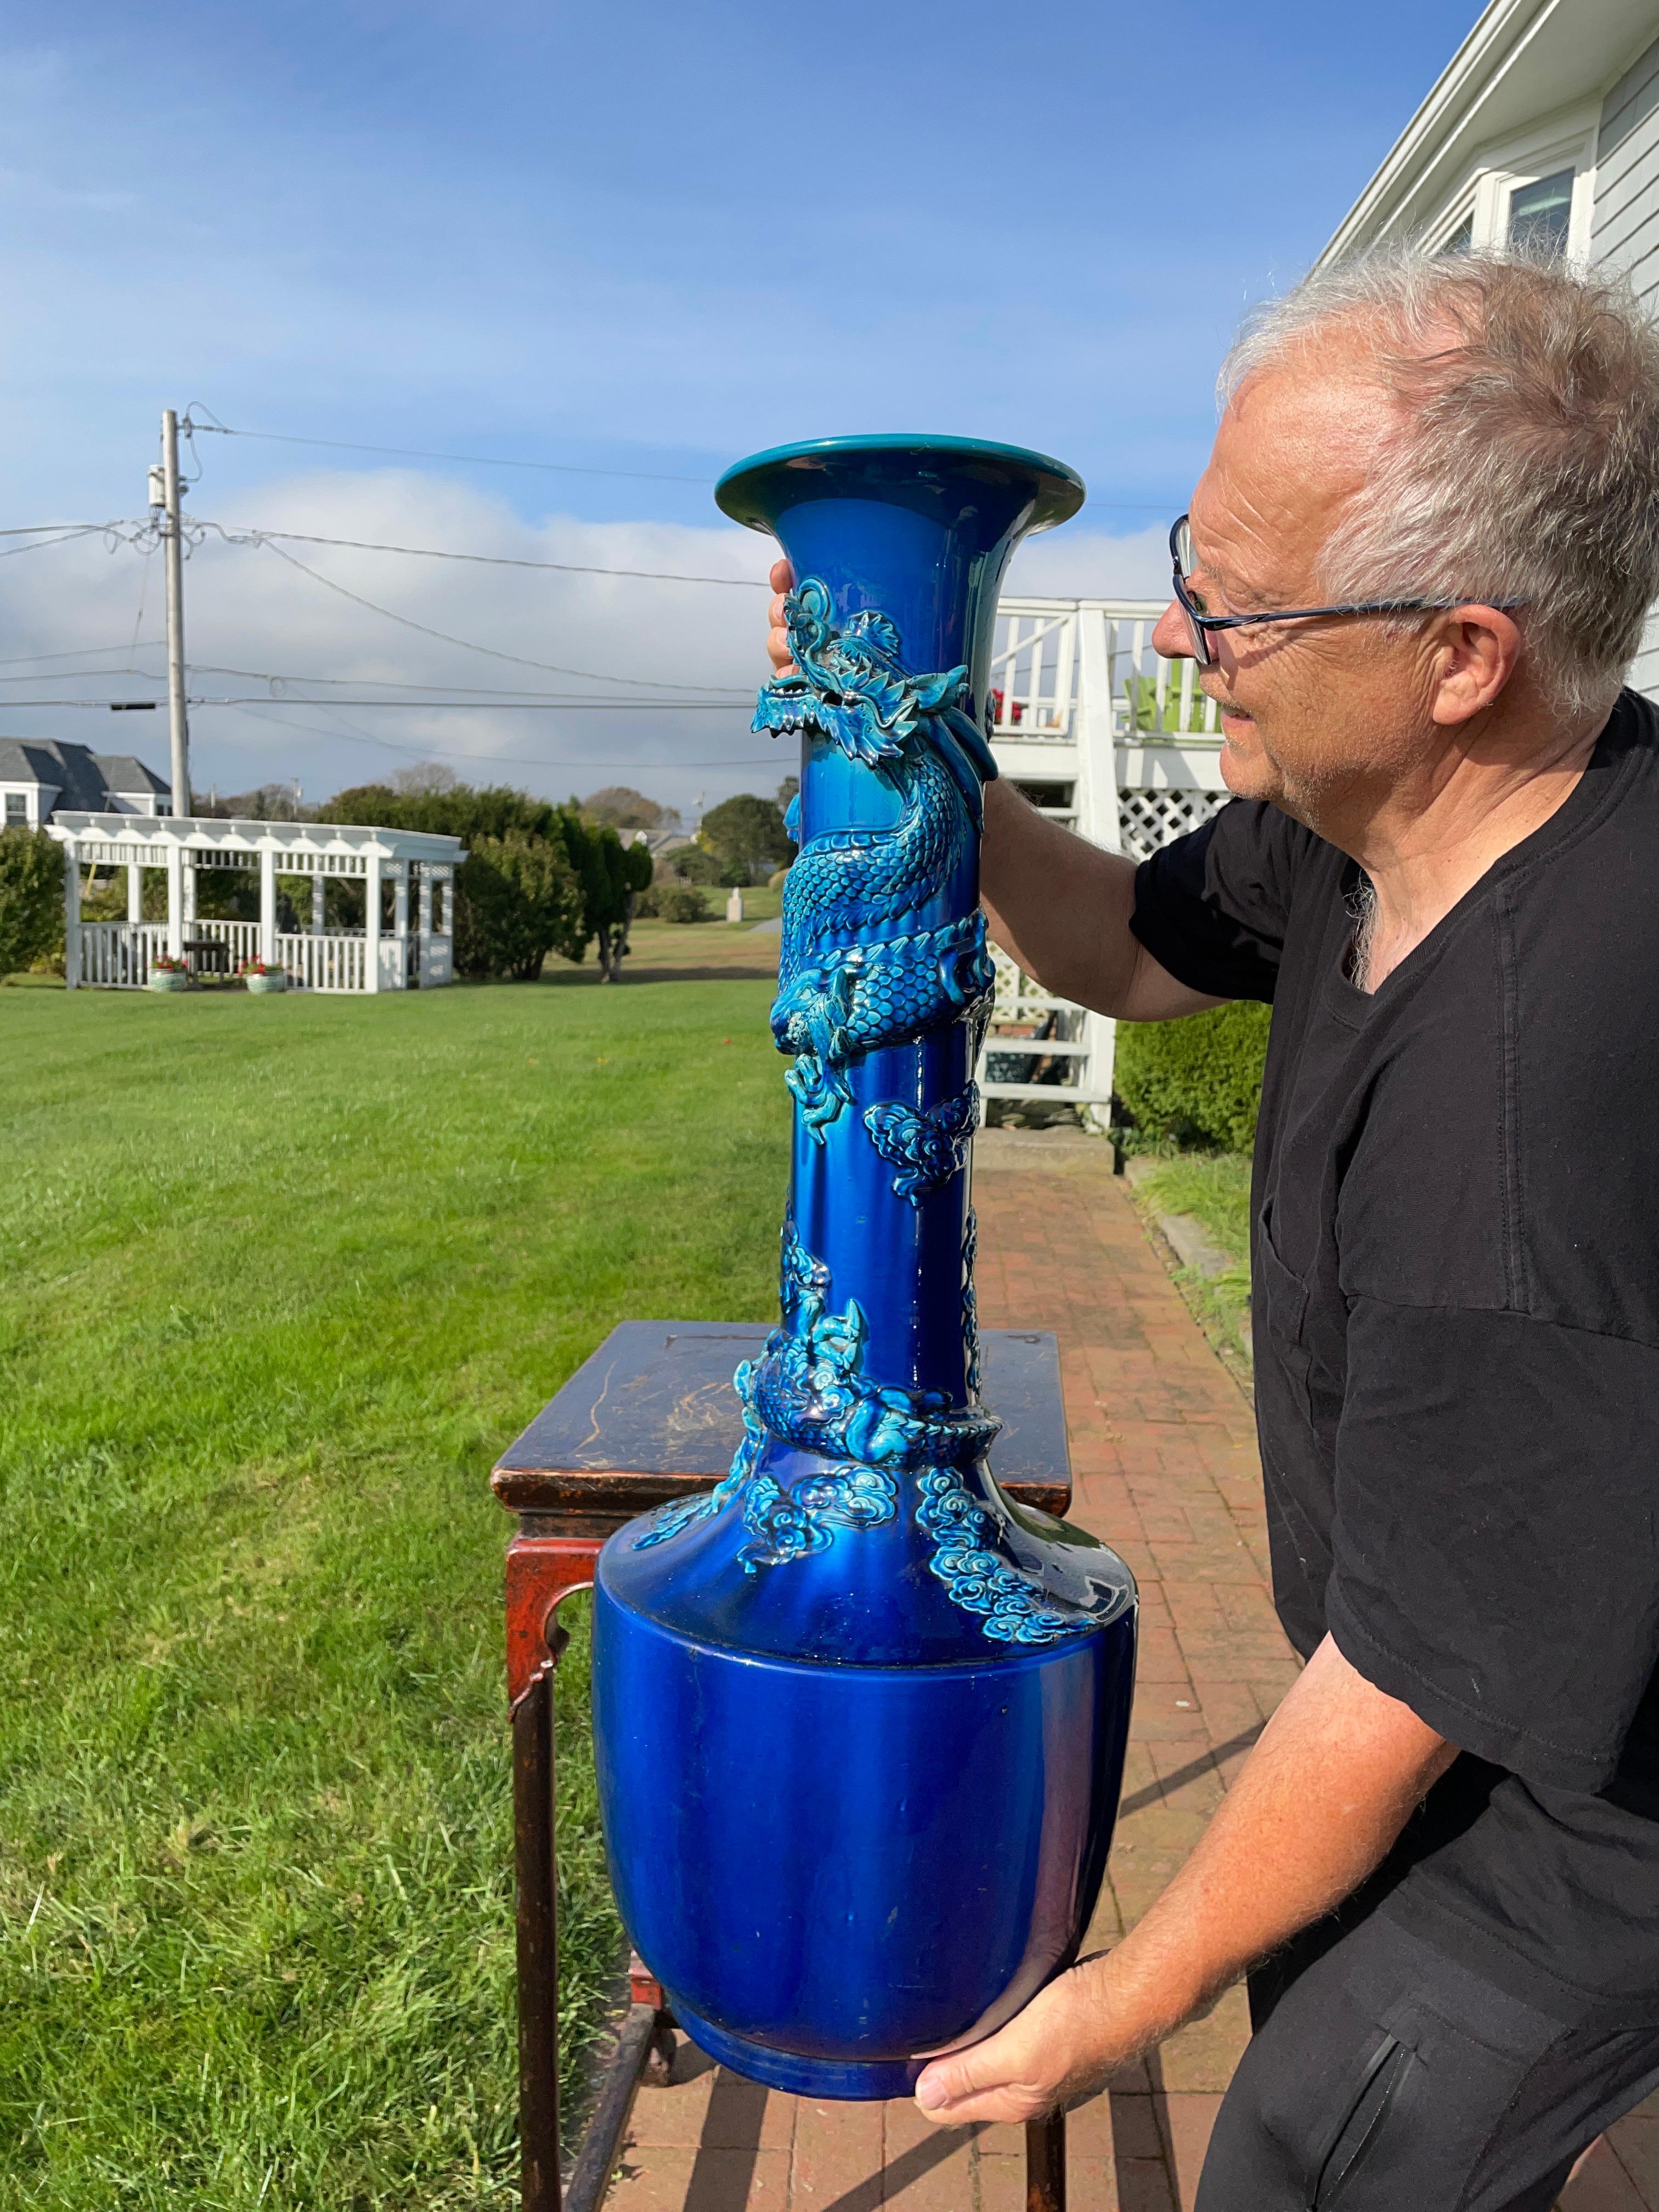 Japon, un vase dragon monumental antique de 37 pouces à glaçure craquelée bleu cobalt, avec un impressionnant dragon enroulé autour de sa tige.

Il a été fabriqué par les maîtres artisans du four japonais d'Awaji, dans le sud du pays, entre la fin